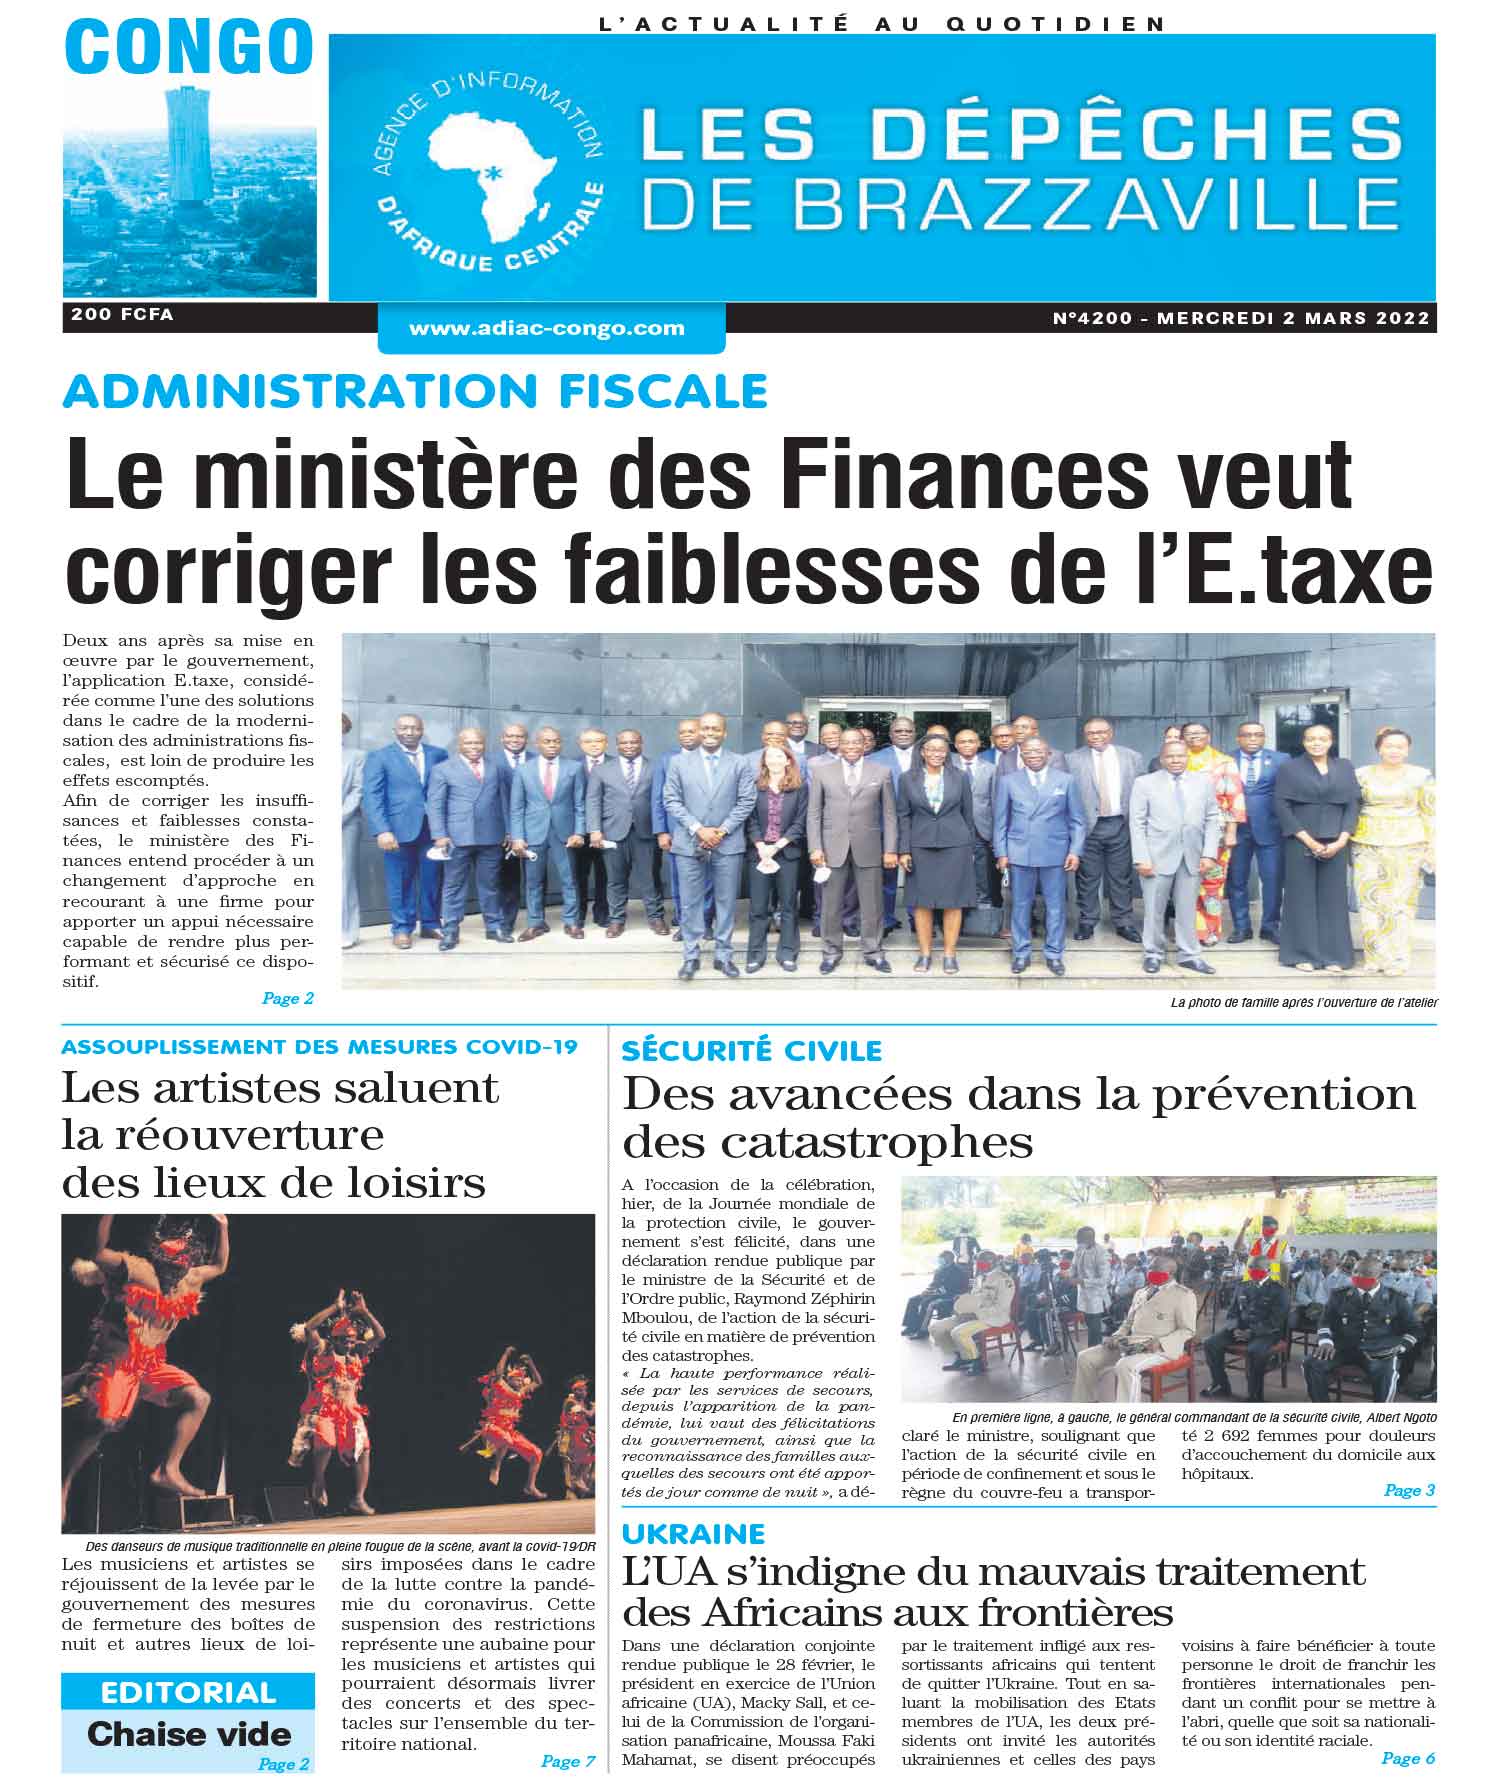 Cover Les Dépêches de Brazzaville - 4200 